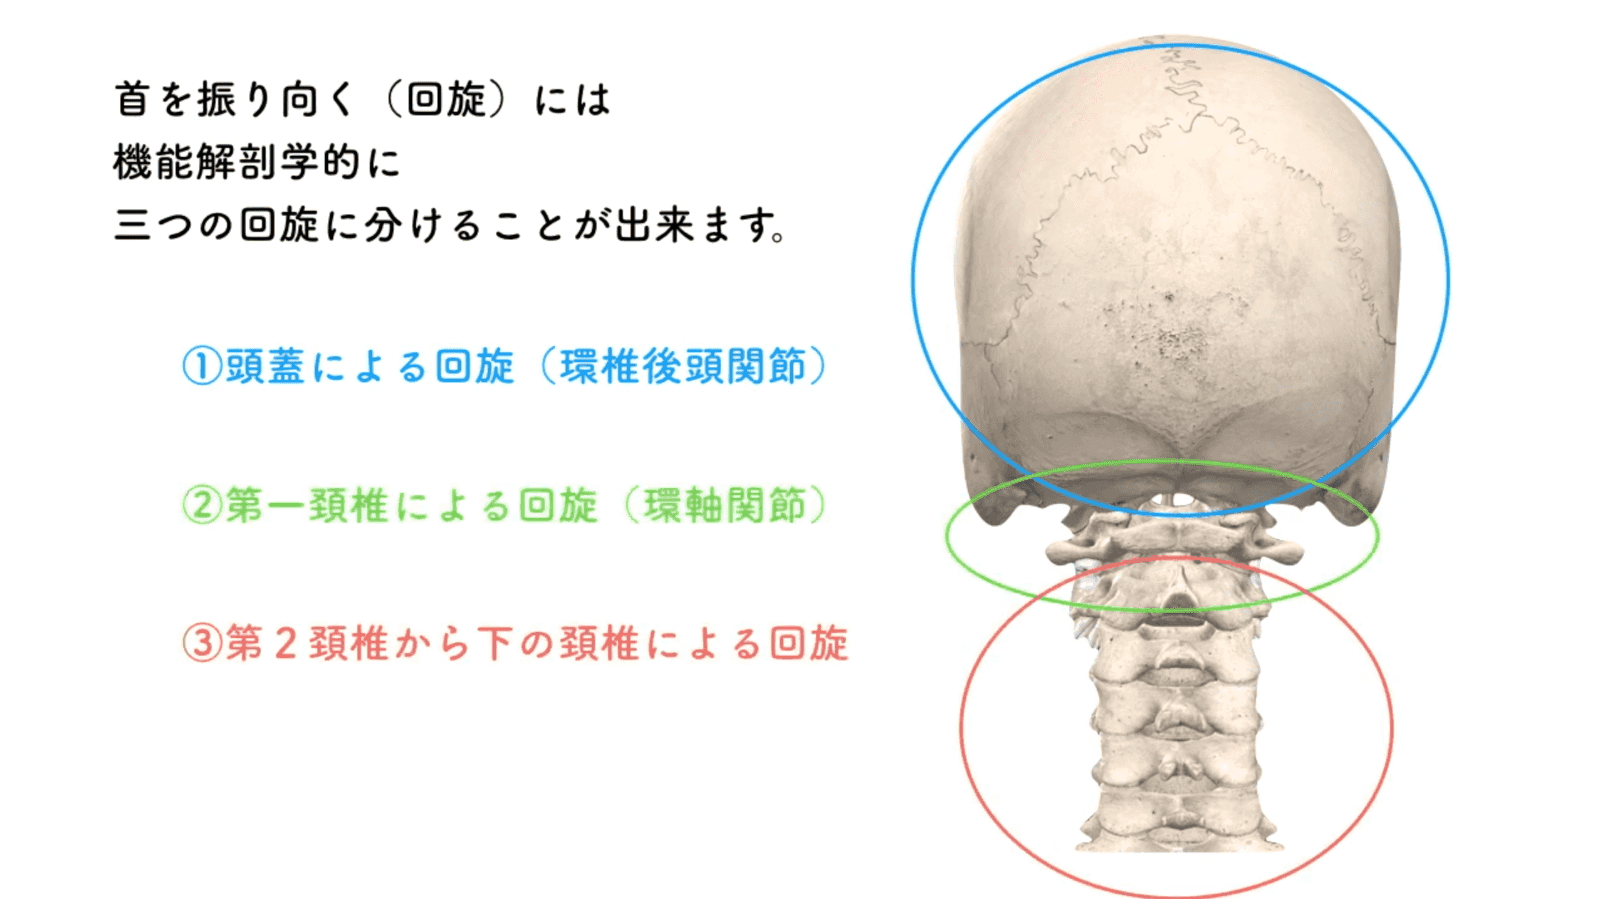 頭と第１頸椎・第2頸椎の特異な形態と機能